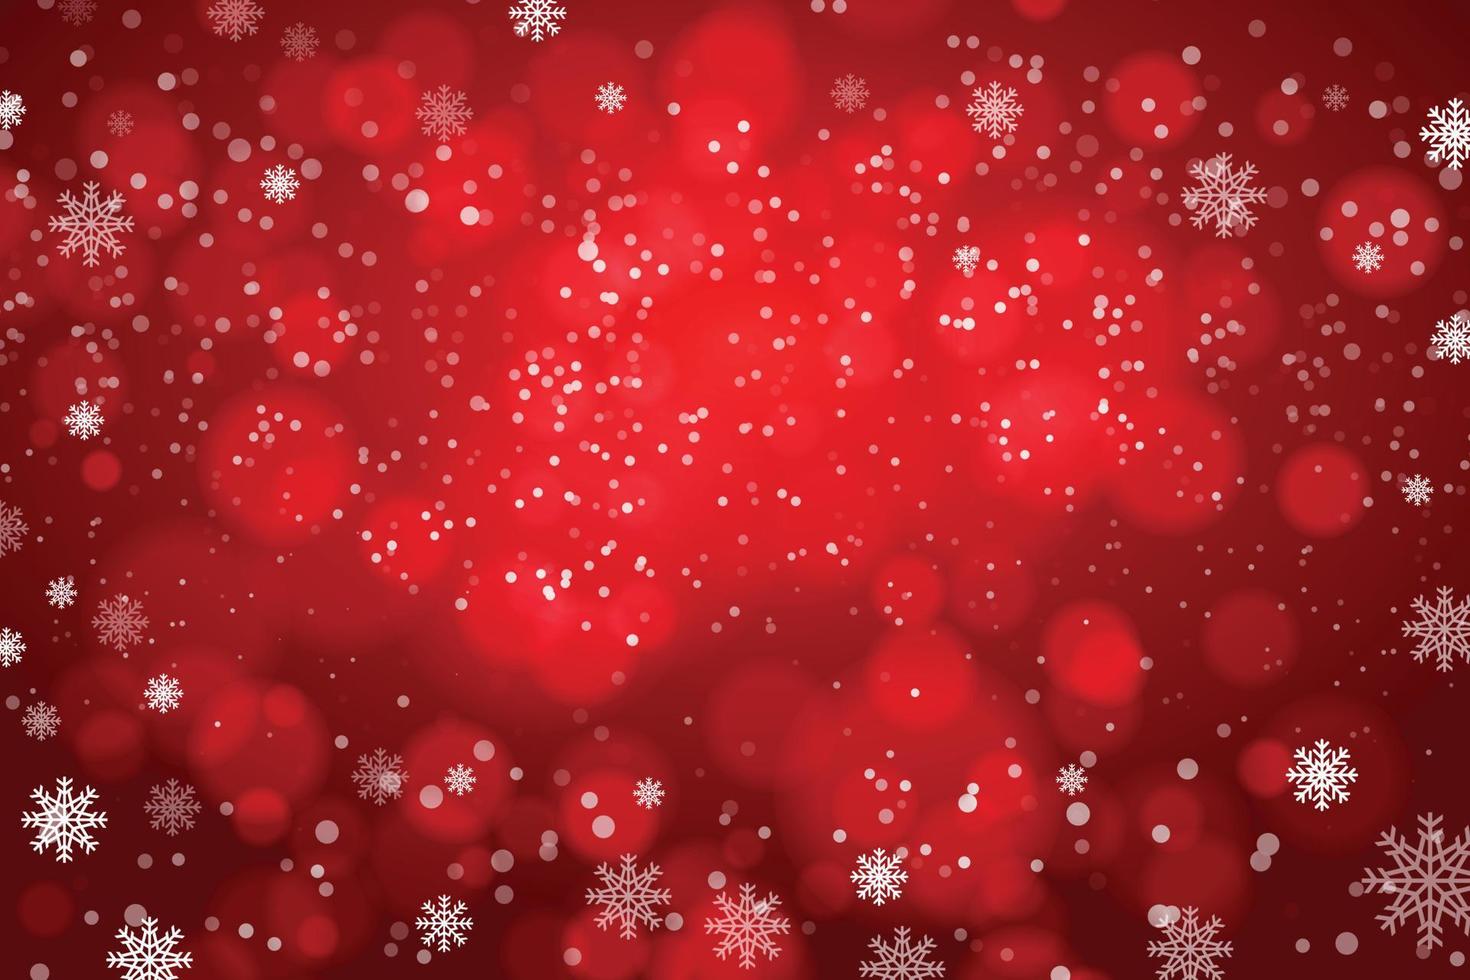 snöflingor och snöfall på en kall röd vinter- bakgrund. vektor